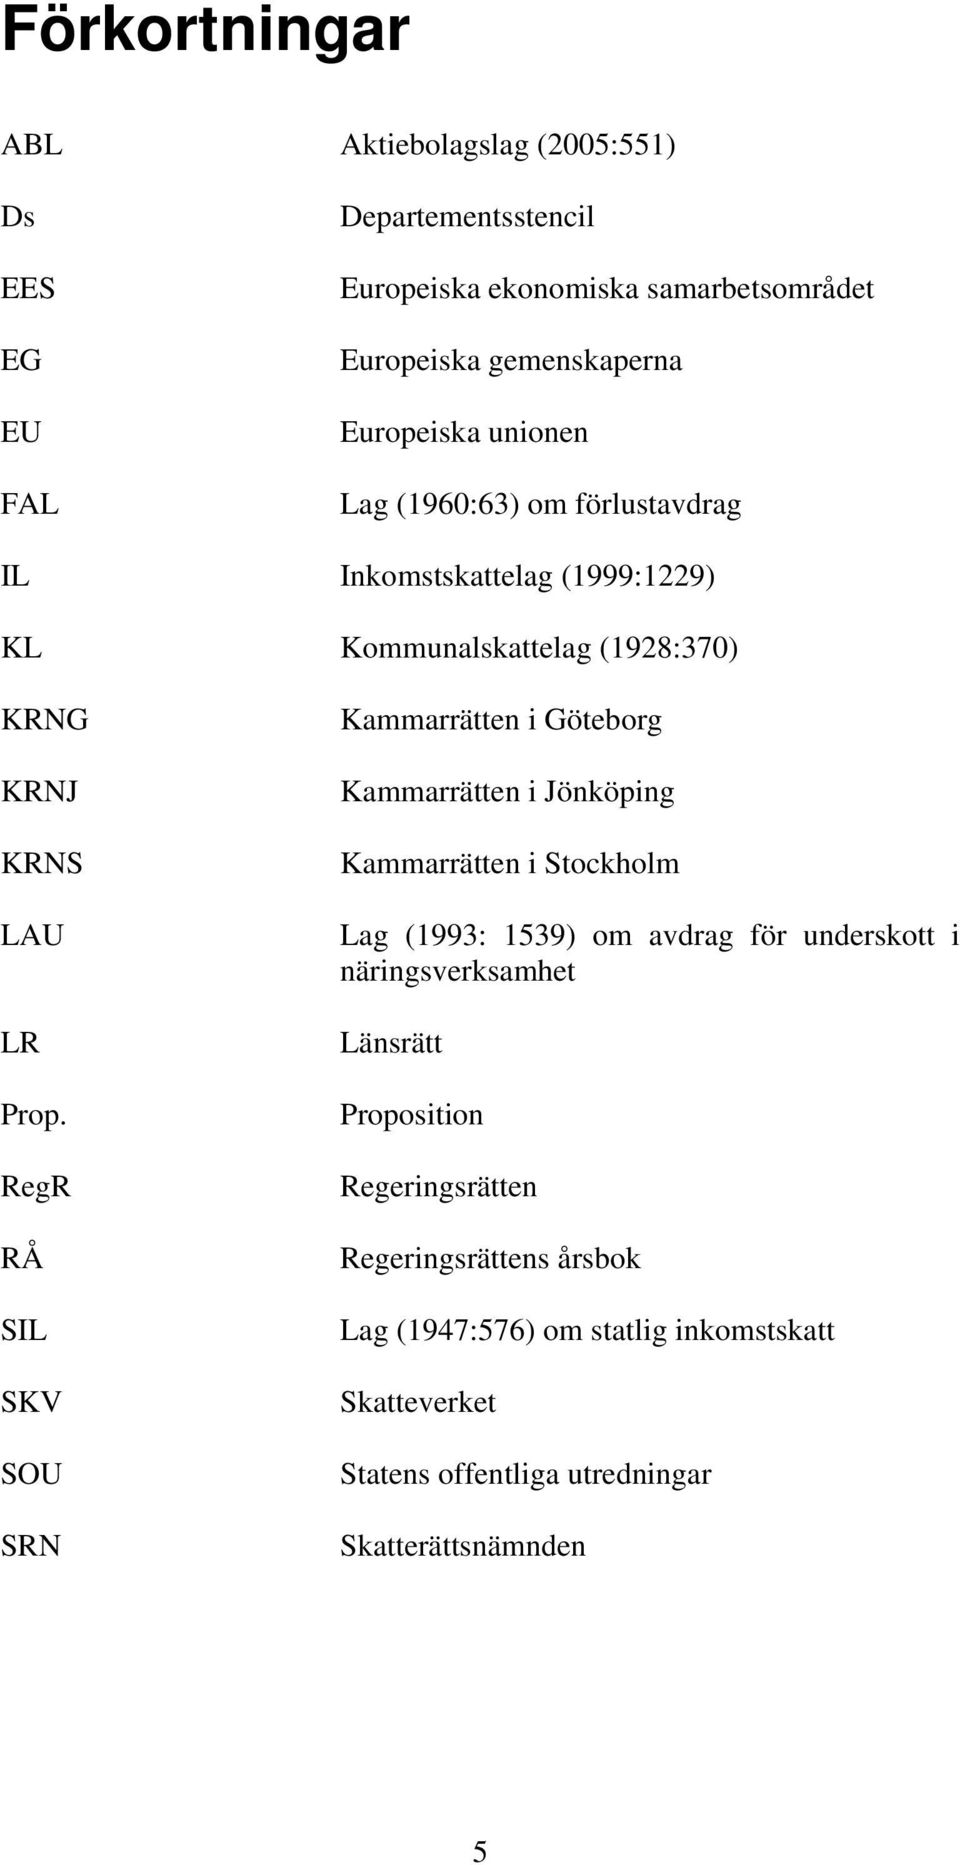 RegR RÅ SIL SKV SOU SRN Kammarrätten i Göteborg Kammarrätten i Jönköping Kammarrätten i Stockholm Lag (1993: 1539) om avdrag för underskott i